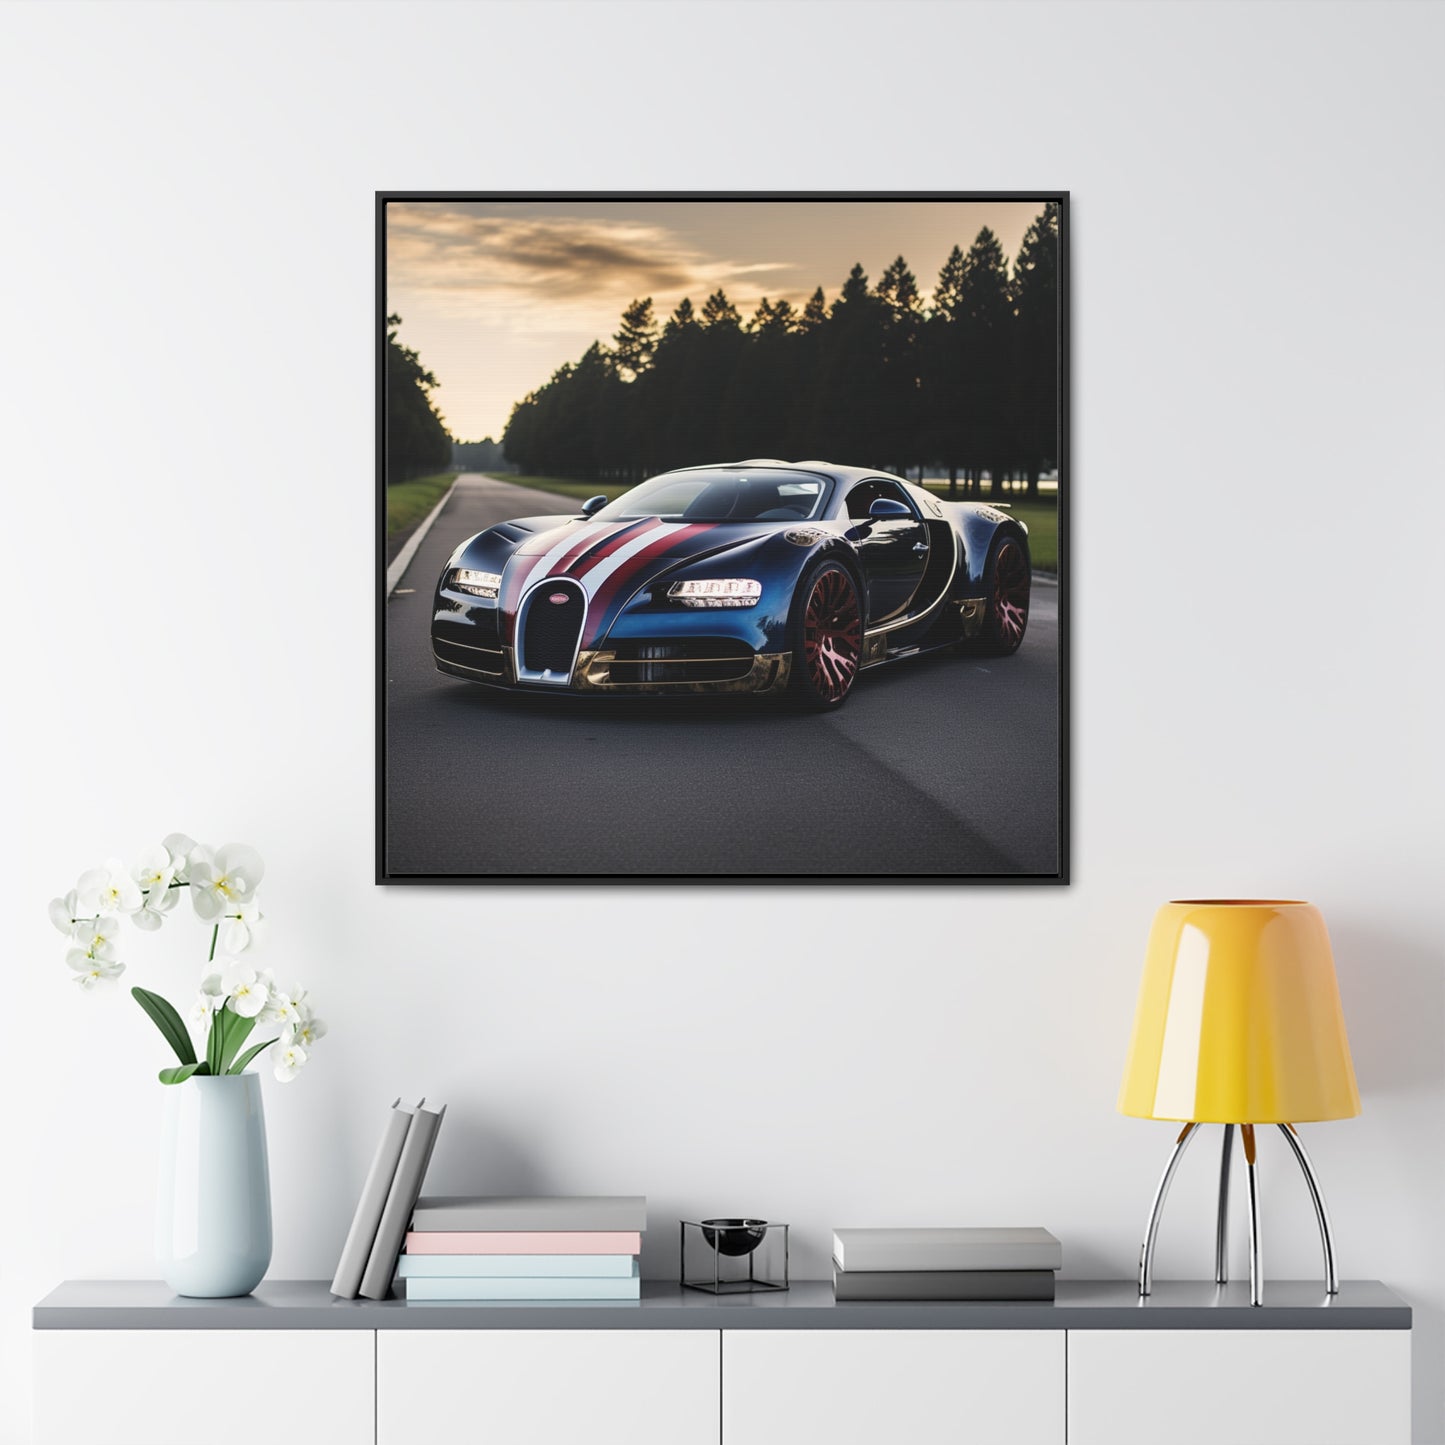 Gallery Canvas Wraps, Square Frame Bugatti Flag American 1